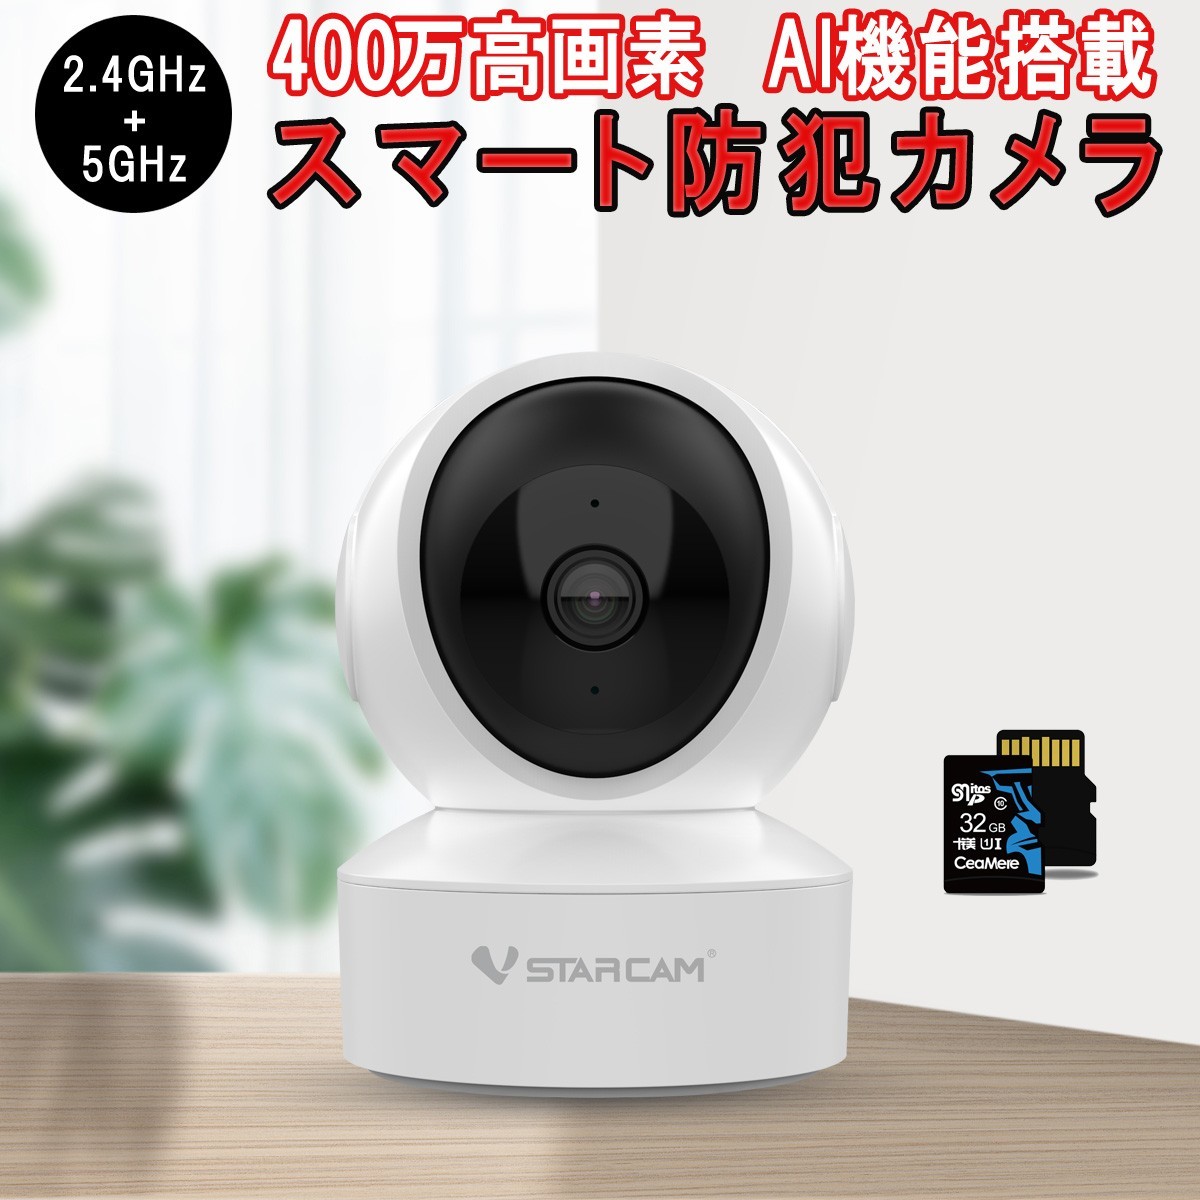 小型 防犯カメラ ワイヤレス CS49Q SDカード32GB同梱 VStarcam 400万画素 2.4GHz 5GHz ONVIF 6ヶ月保証 送料無料「CS49Q/SD32.A」